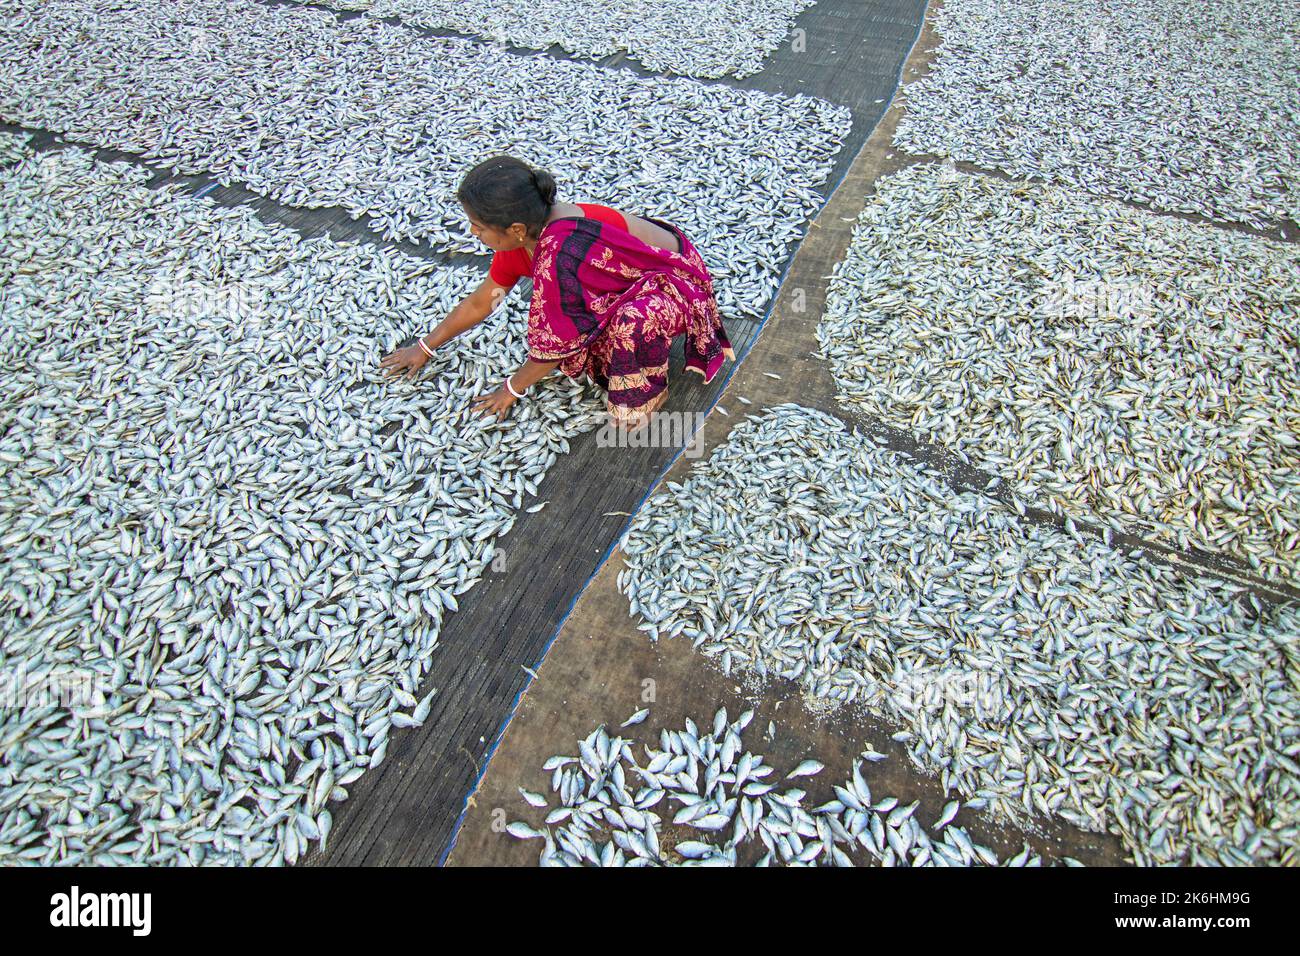 Frauen verarbeiten kleine Fische für den Trockenfischhandel. Arbeiter schneiden und reinigen die Fische, fügen Salz hinzu und trocknen sie dann auf einer Bambusplattform. Stockfoto